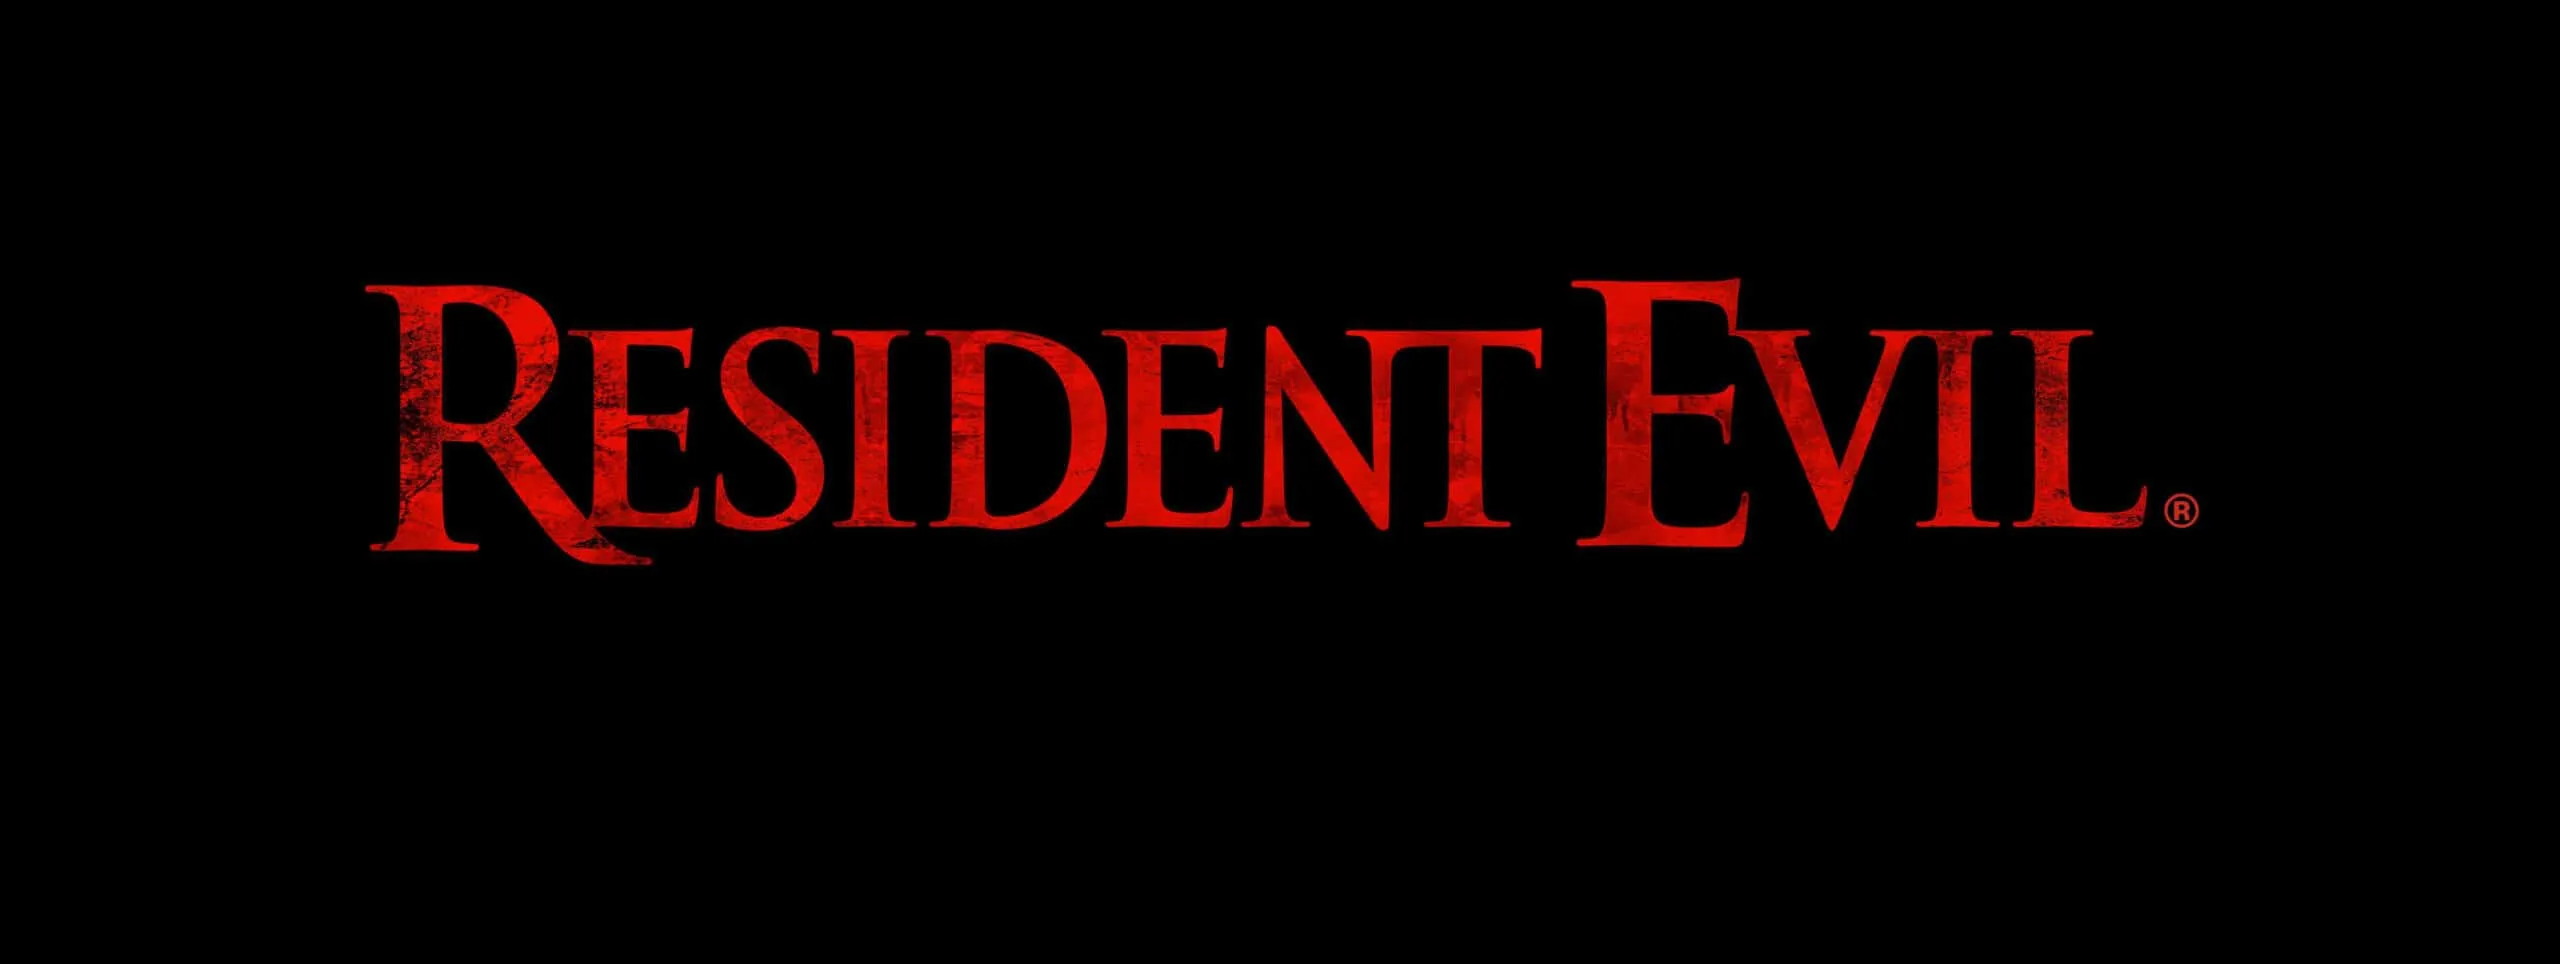 Resident Evil: Capcom анонсирует улучшенные версии трех частей лицензии